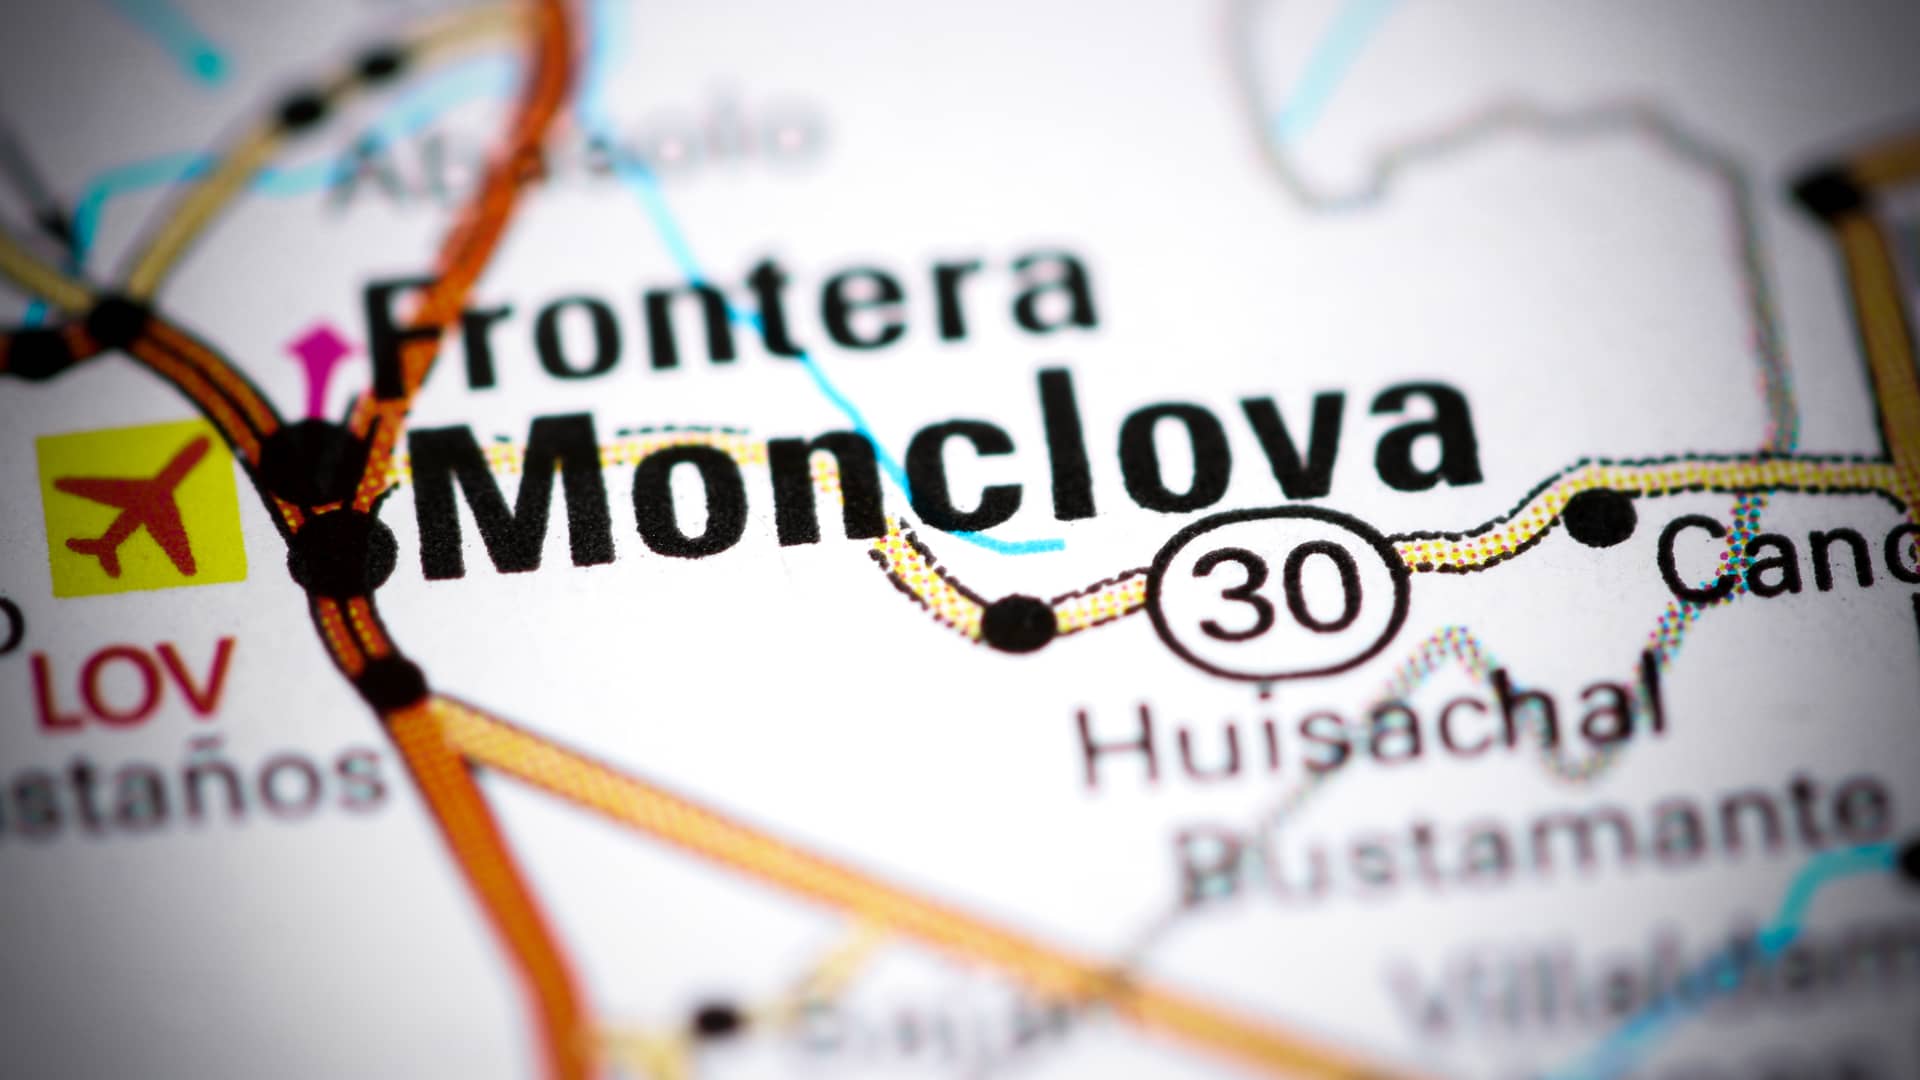 Localizacion de Monclova en el mapa para representar las sucurslaes de sky en esa localidad